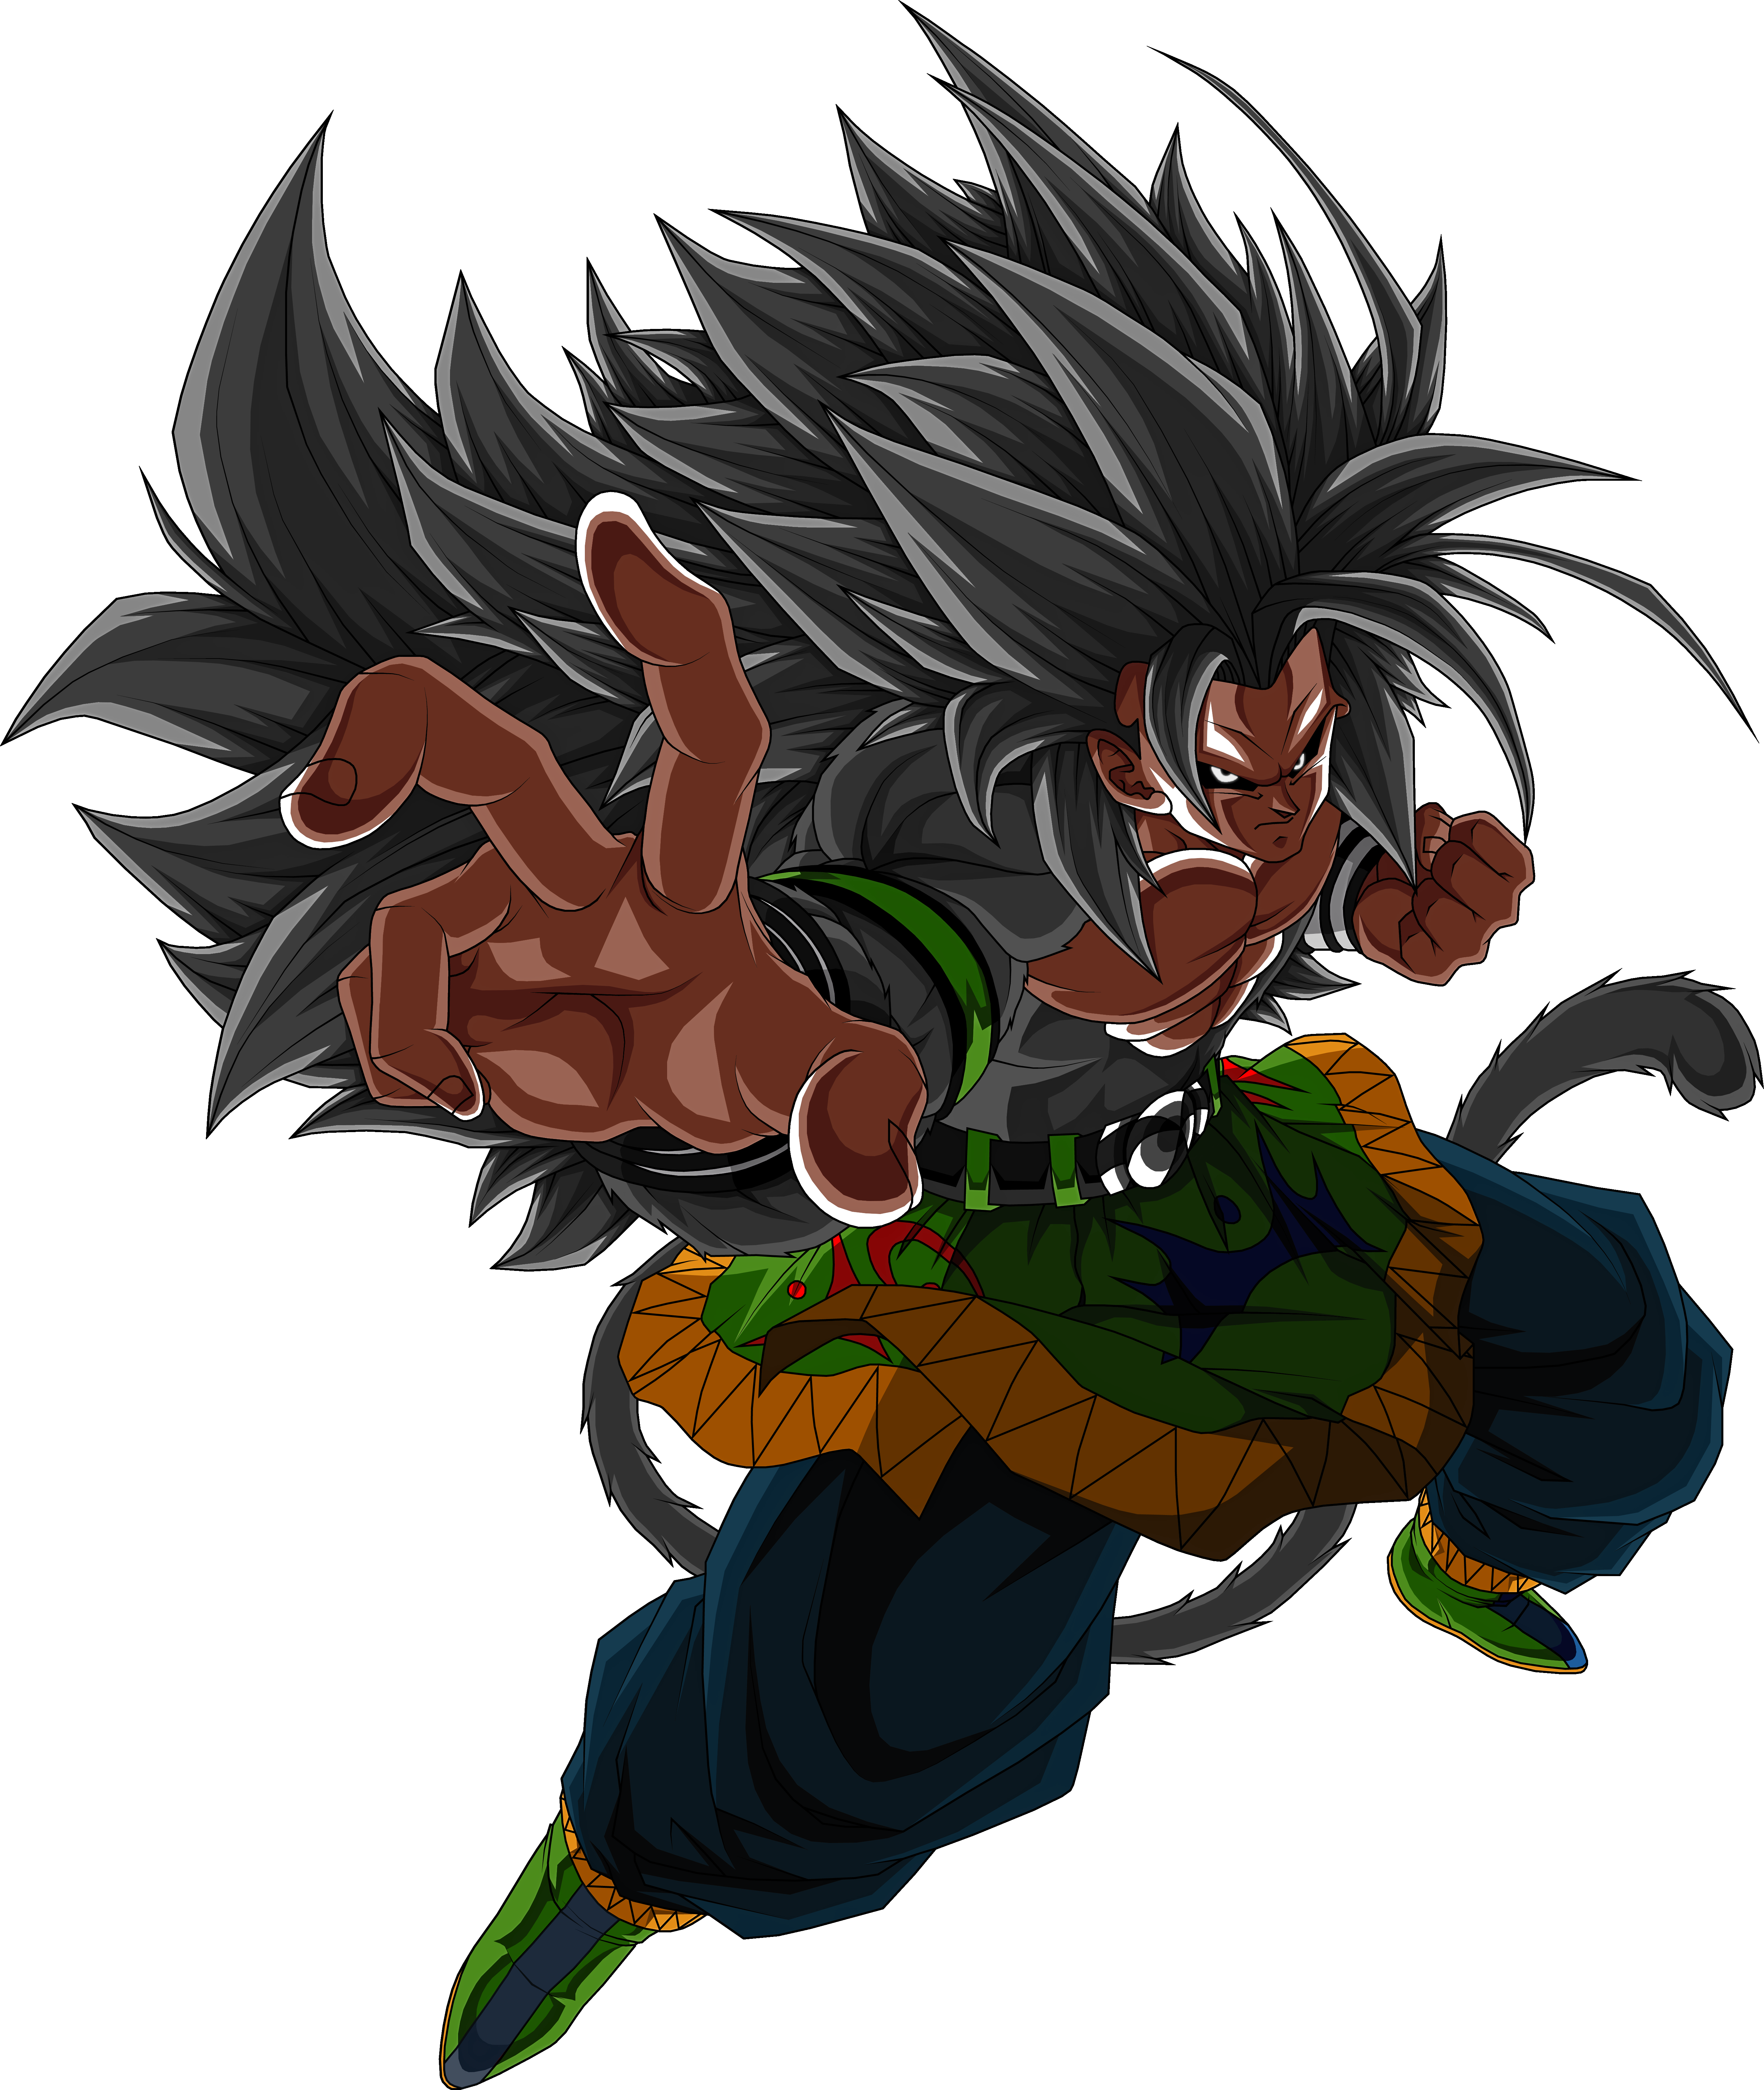 SSJ5 Xeno Goku Render by MohaSetif on DeviantArt